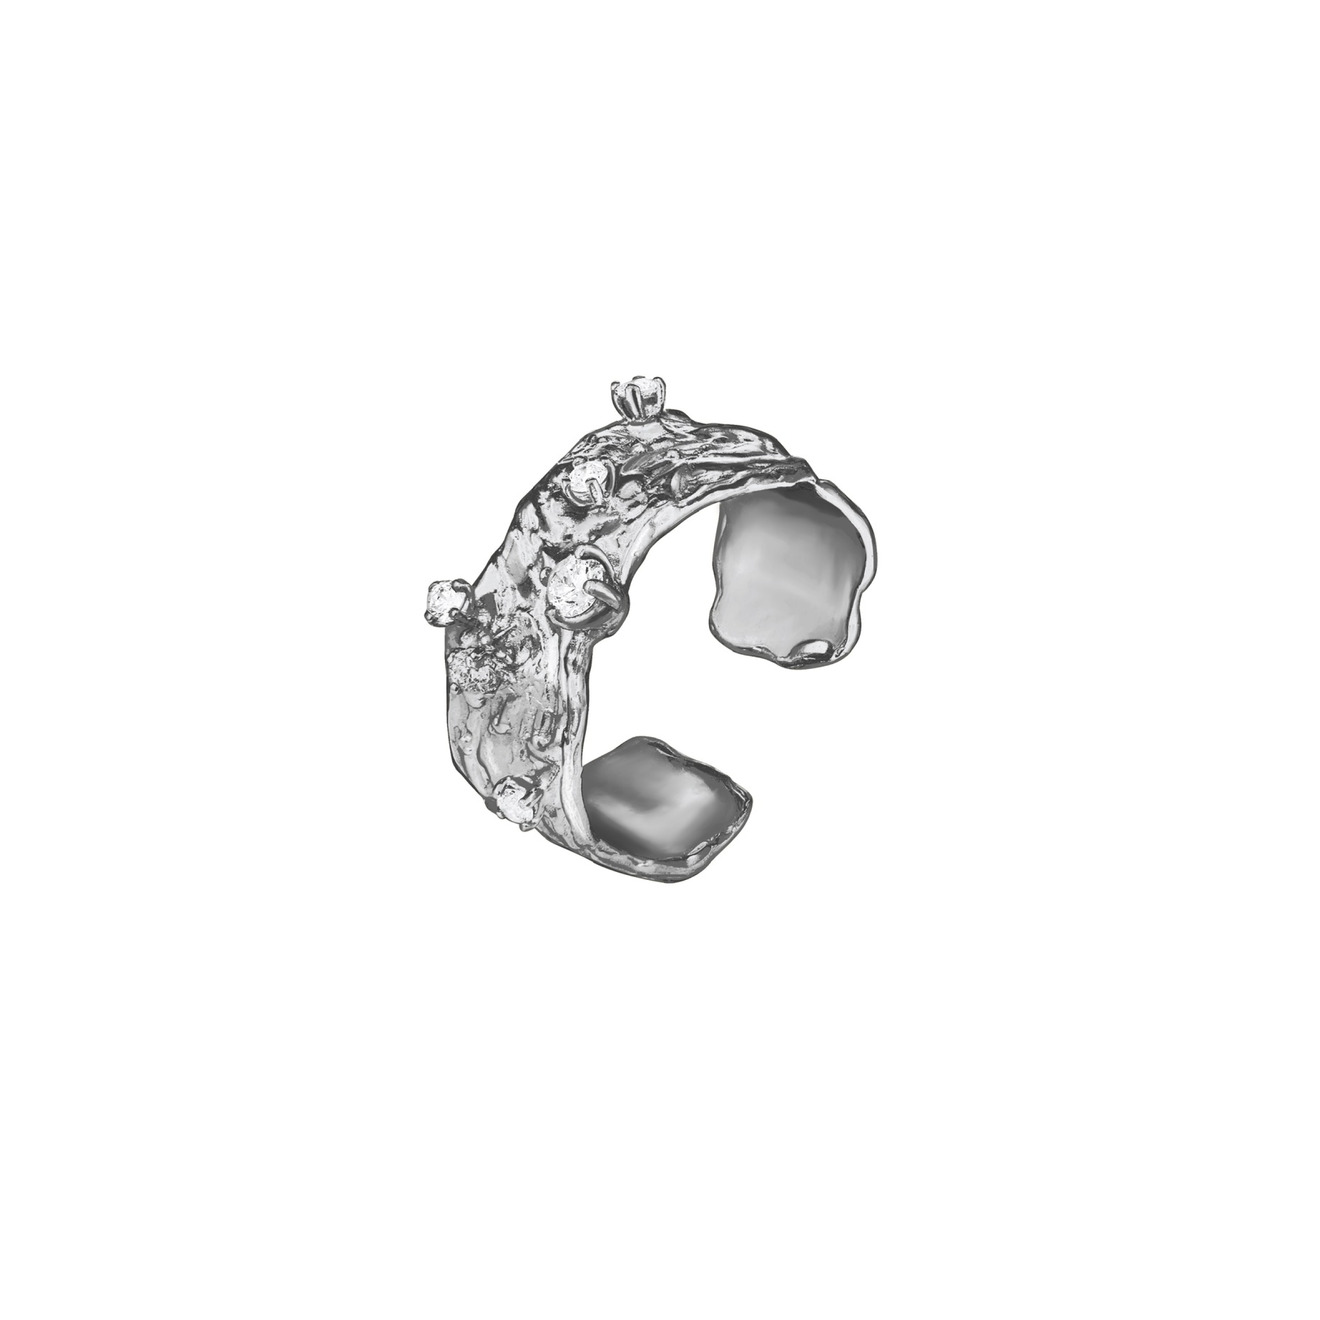 nastya maximova позолоченные асимметричные серьги из серебра с фианитами Nastya Maximova Безразмерное кольцо из серебра с фианитами